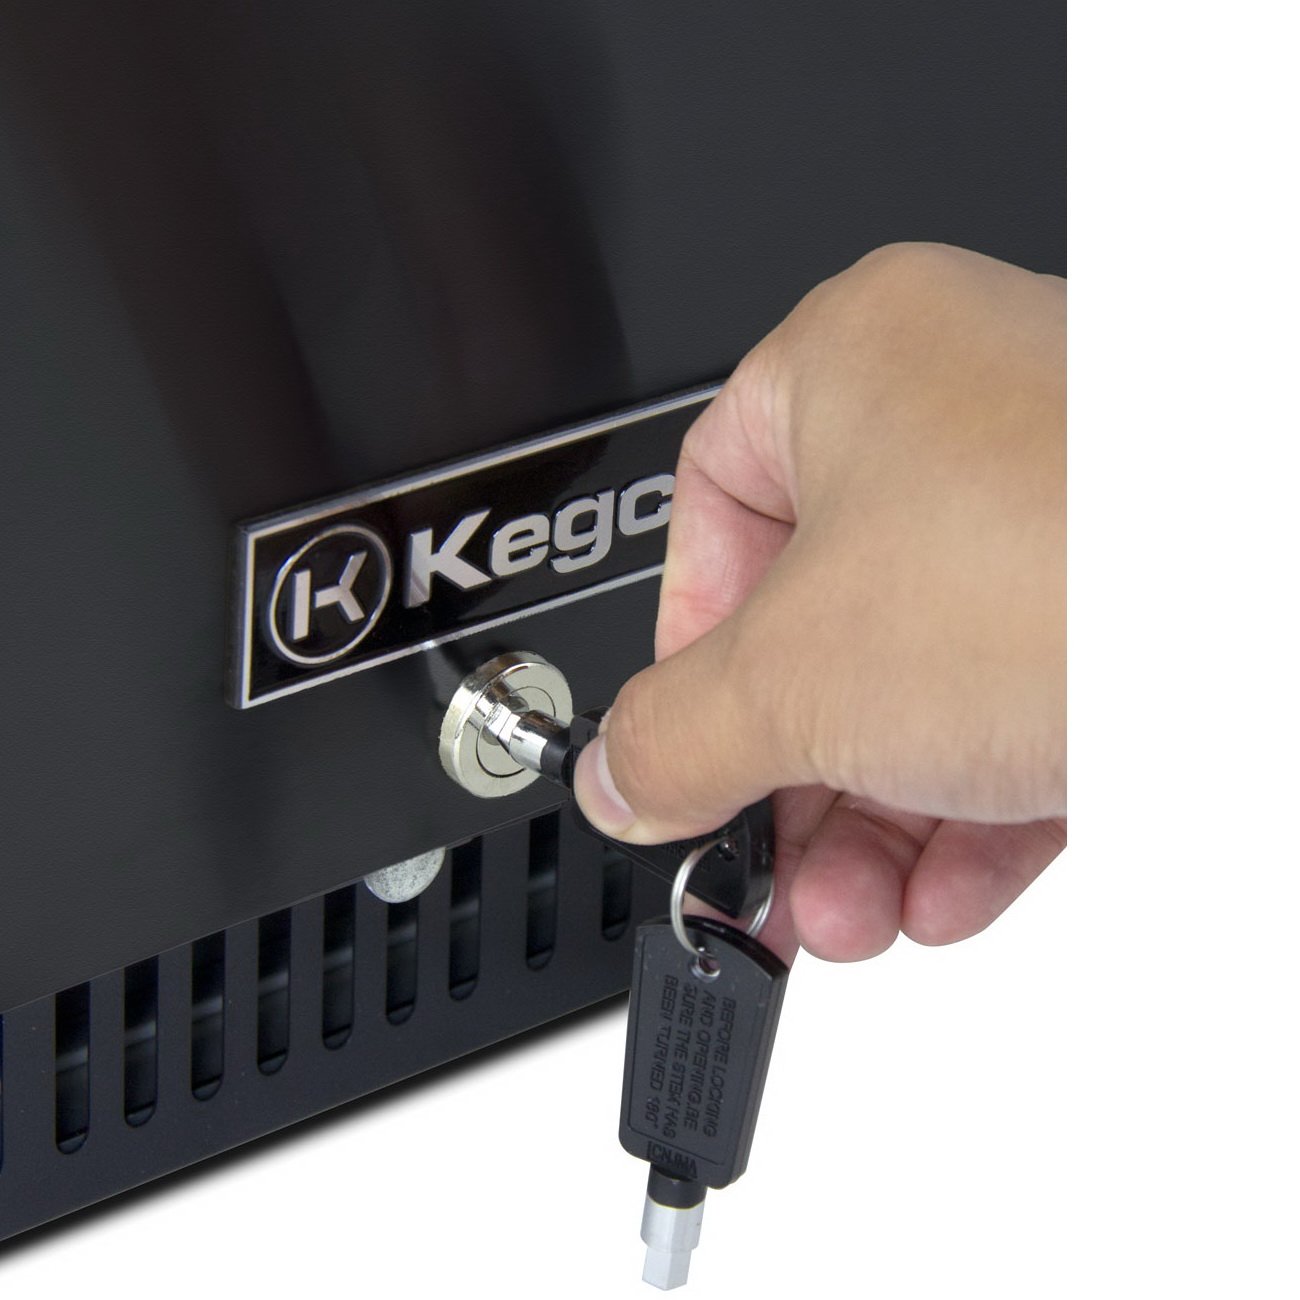 Kegco 15" Wide Commercial Grade Digital Kombucha Dispenser with Black Door